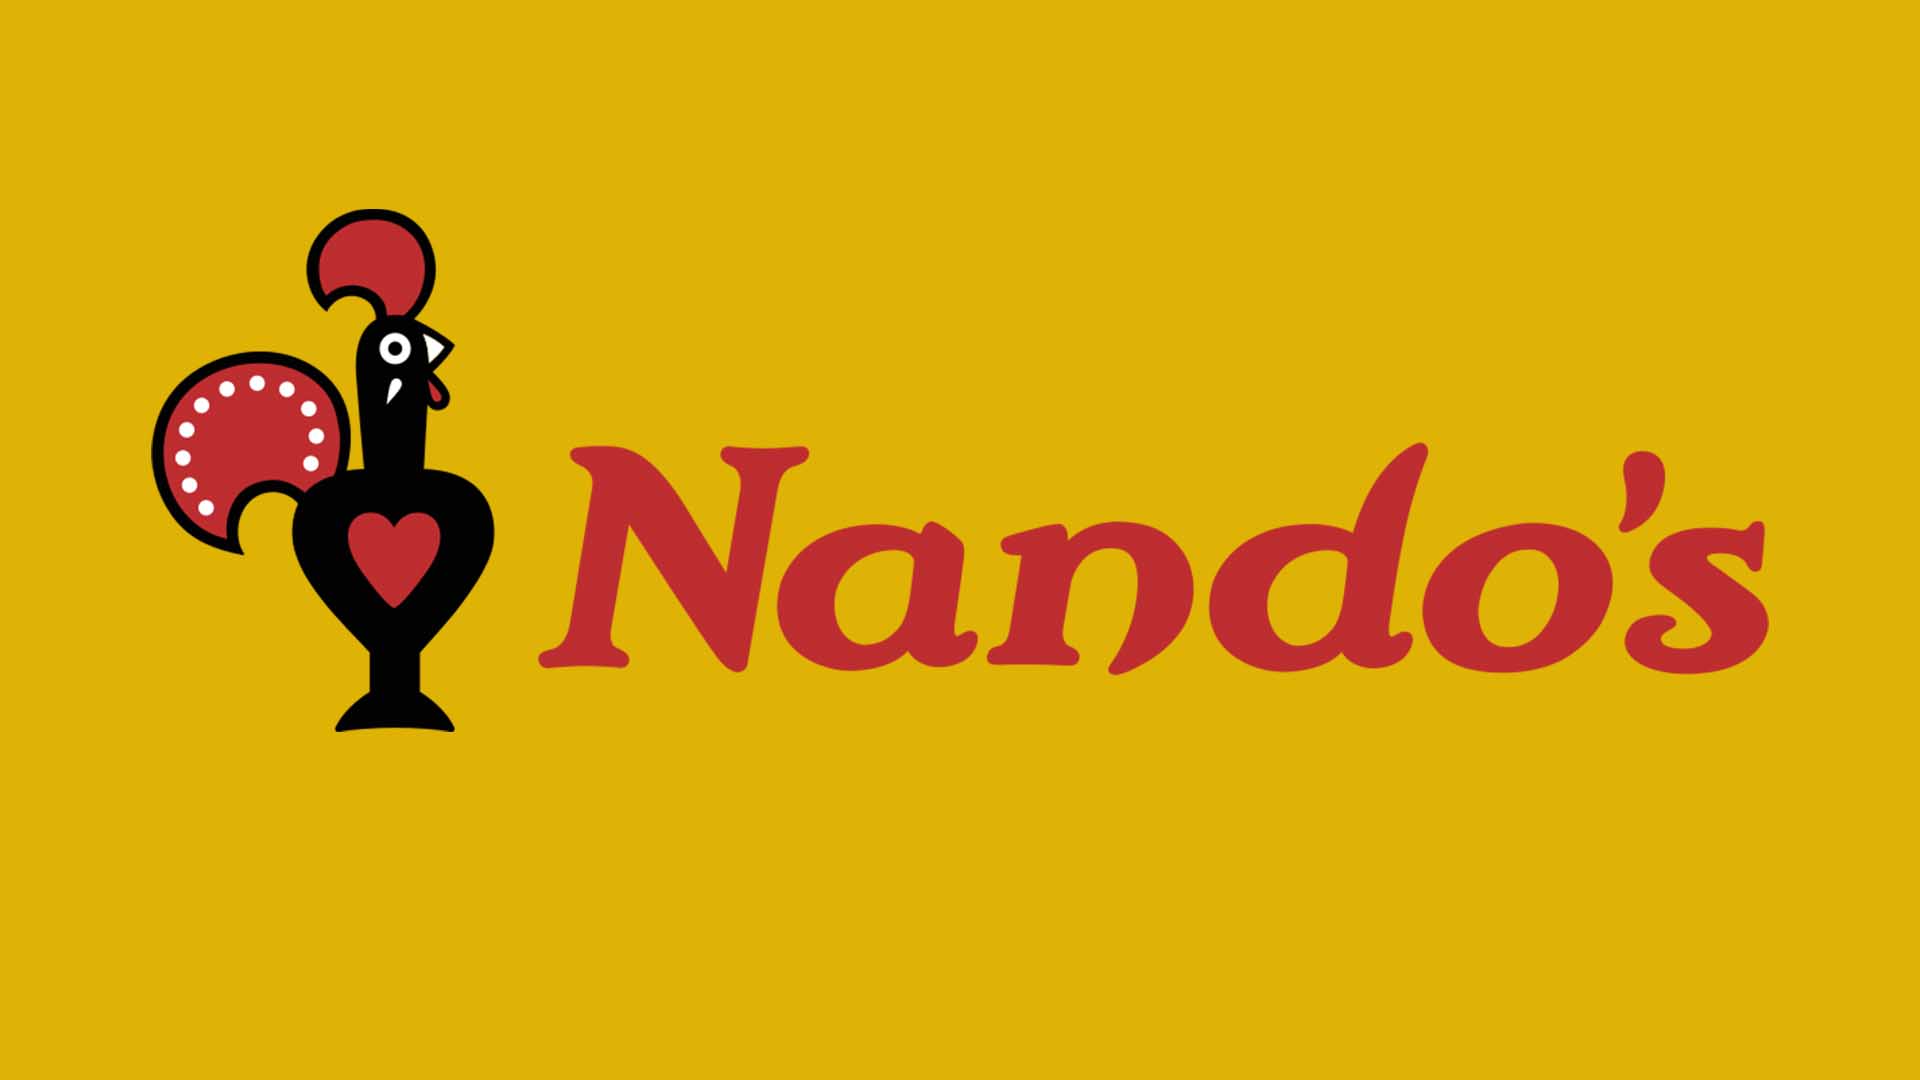 A Nando’s logo